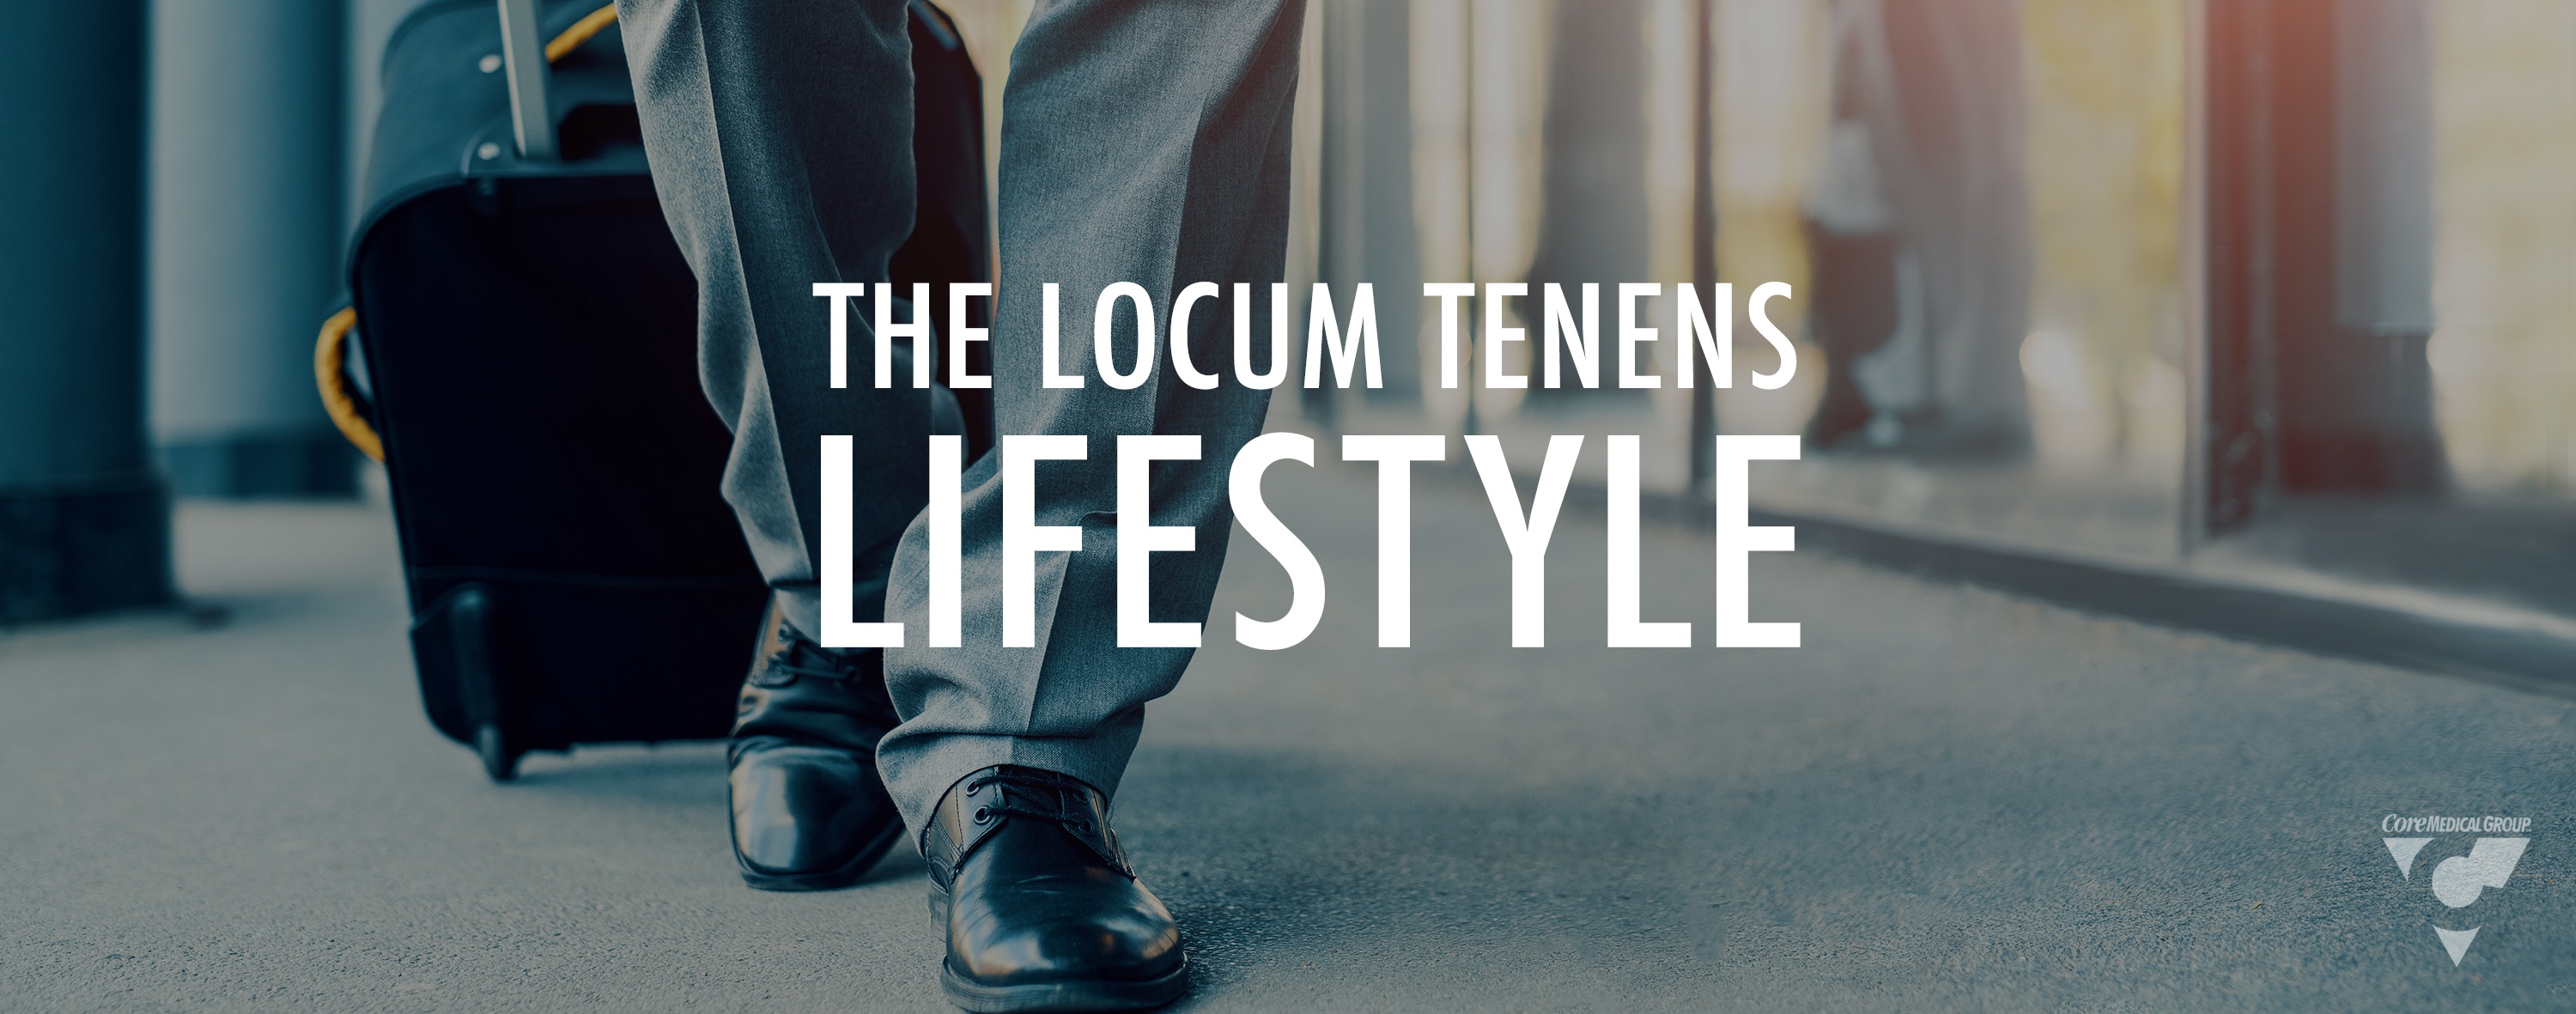 The_Locum_Tenens_Lifestyle_Blog_Featured_Image